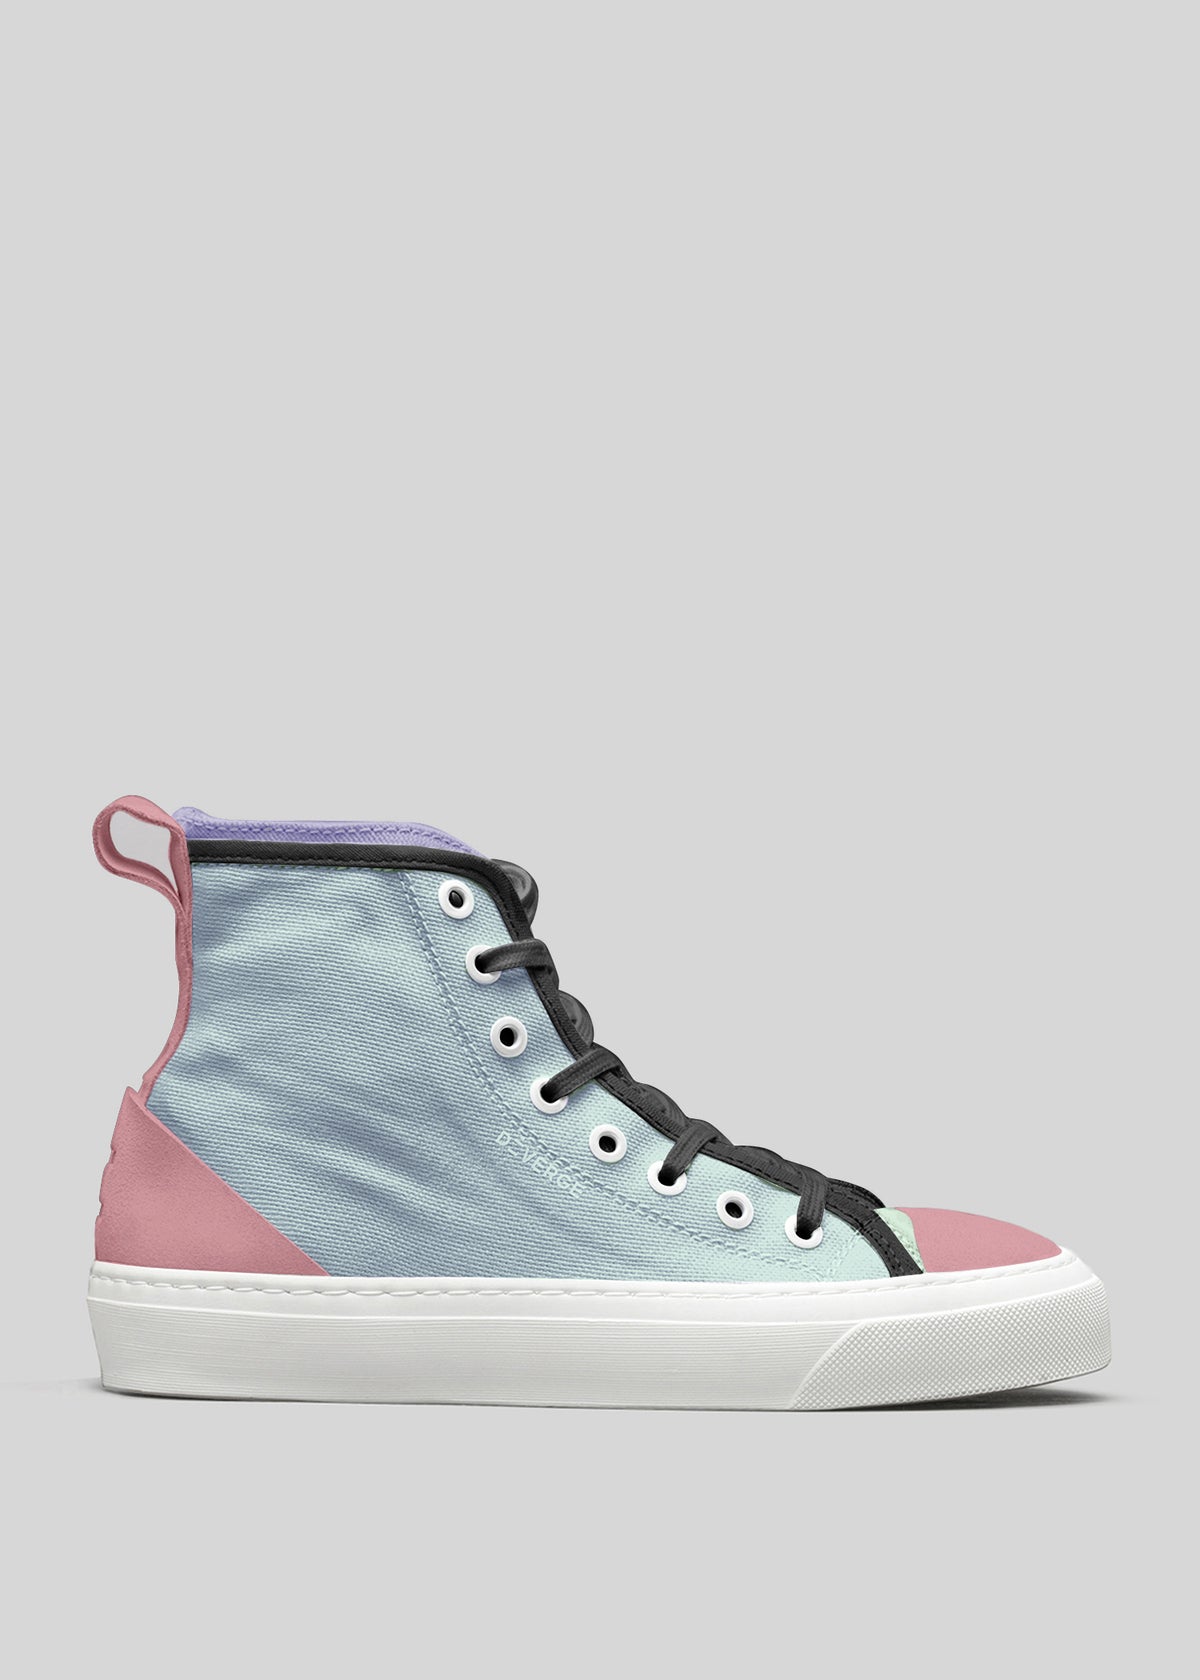 High-Top-Sneaker aus Segeltuch in pastellblauen und rosa Farben mit schwarzen Schnürsenkeln auf grauem Hintergrund, TH0006 von Rita.